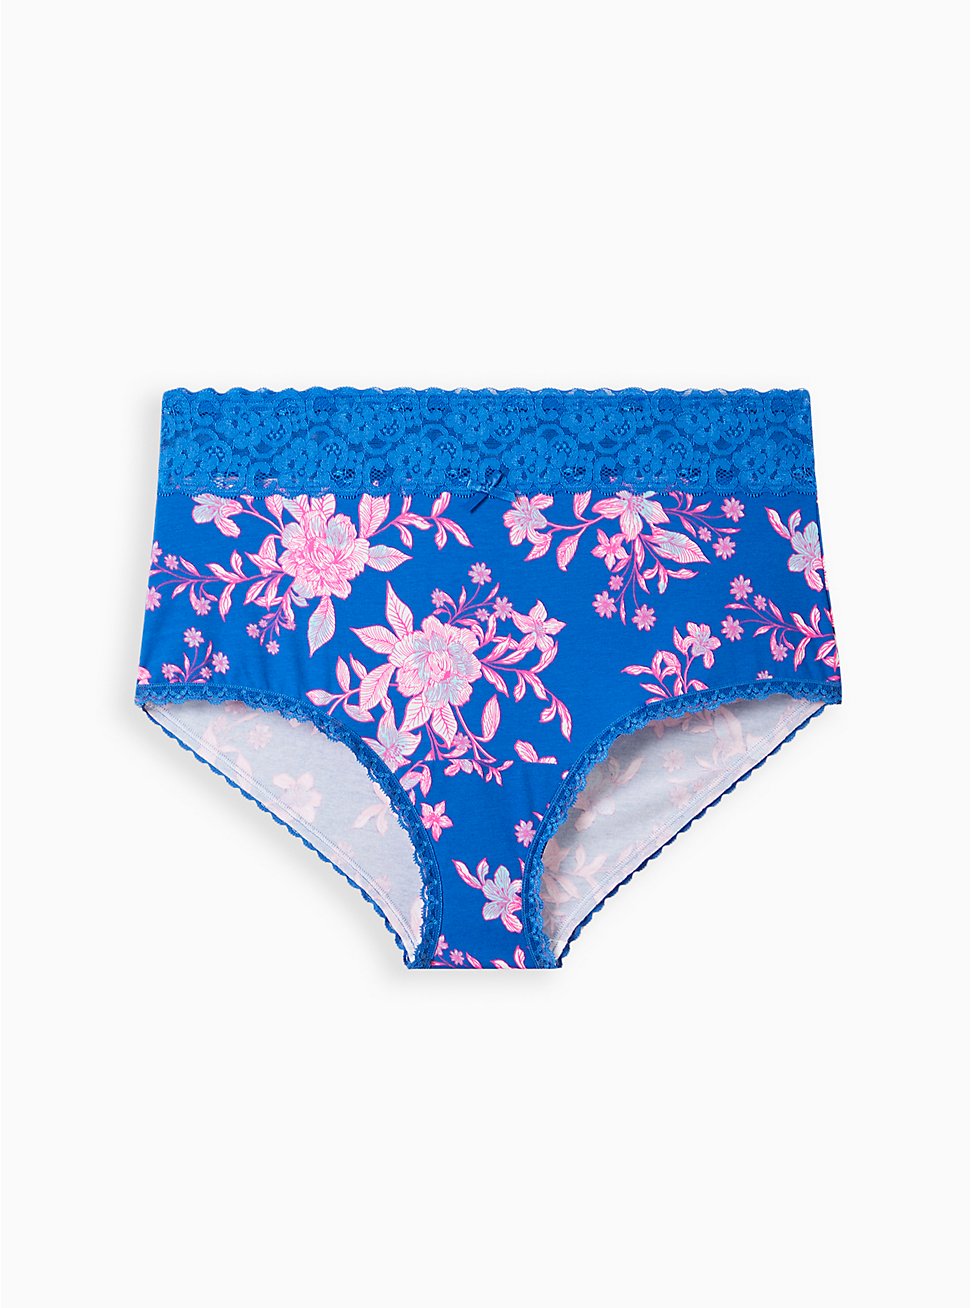 Plus Size Wide Lace Trim Brief Panty - Cotton Floral Blue, LILLIAN FLORAL BLUE, hi-res